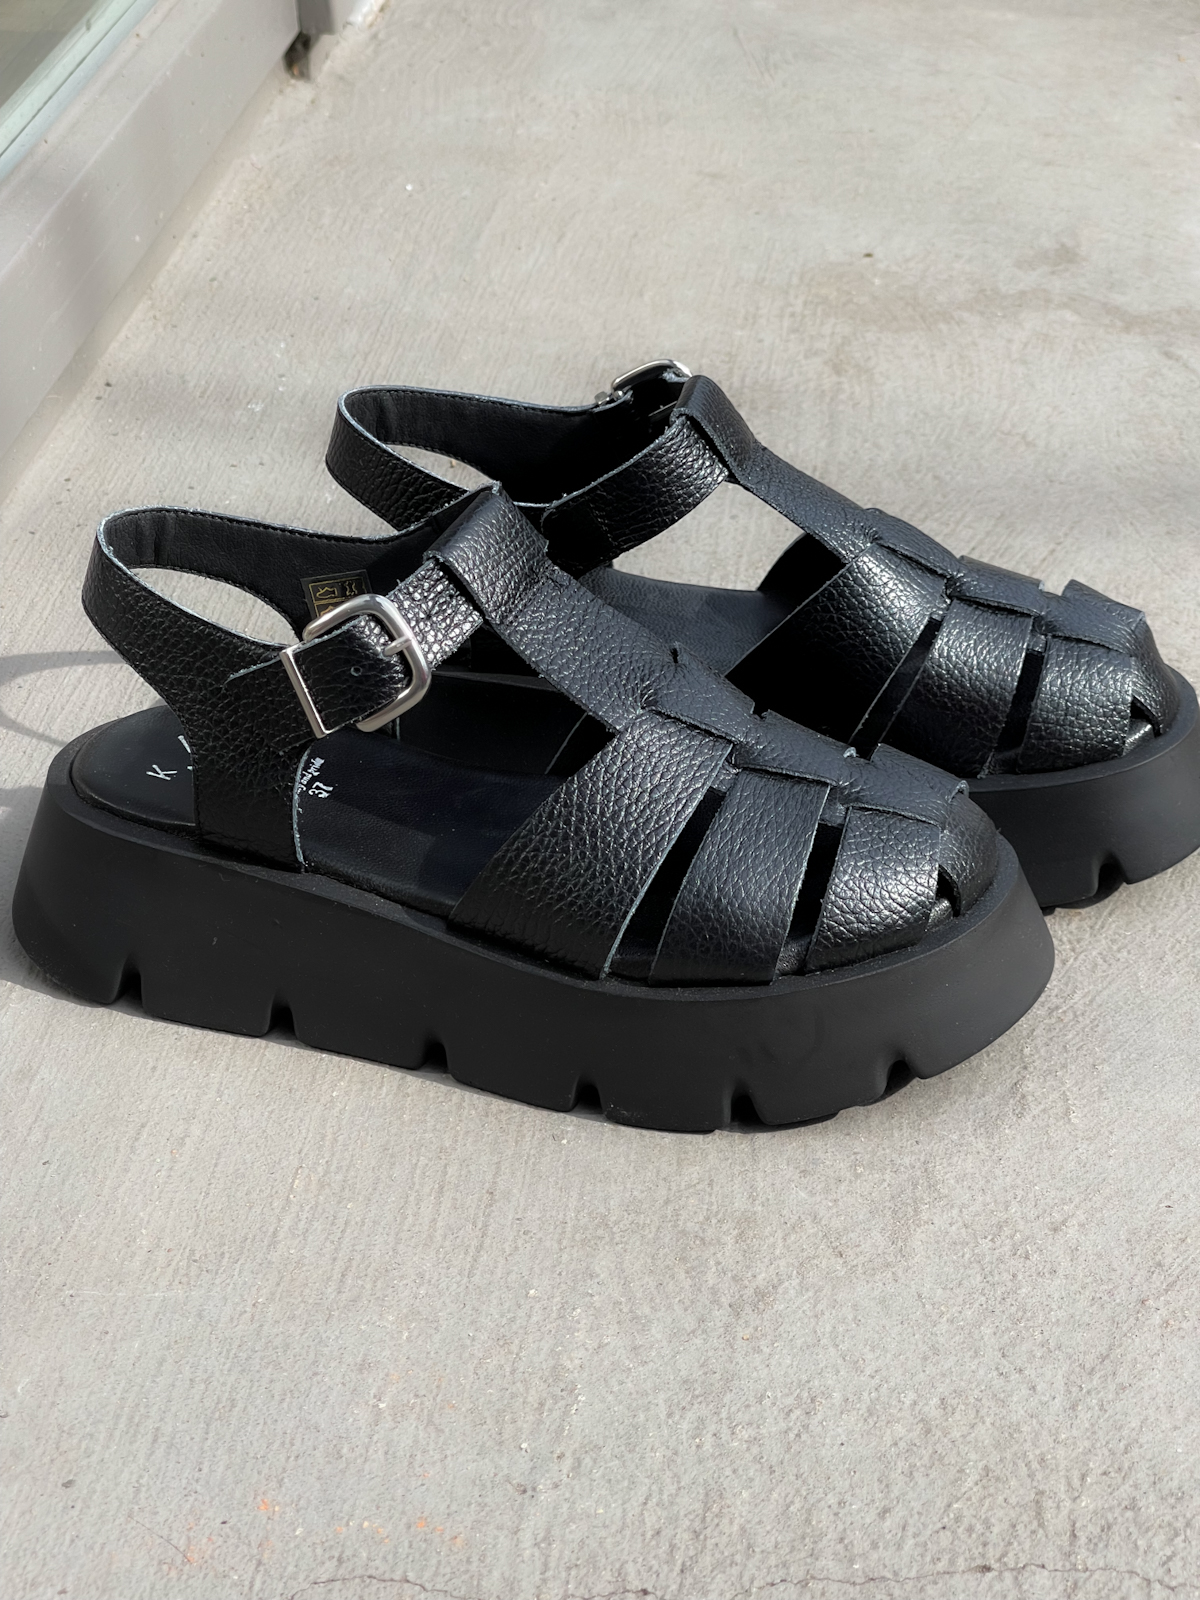 KMB Shoes - Sandale RIO NEGRO - black